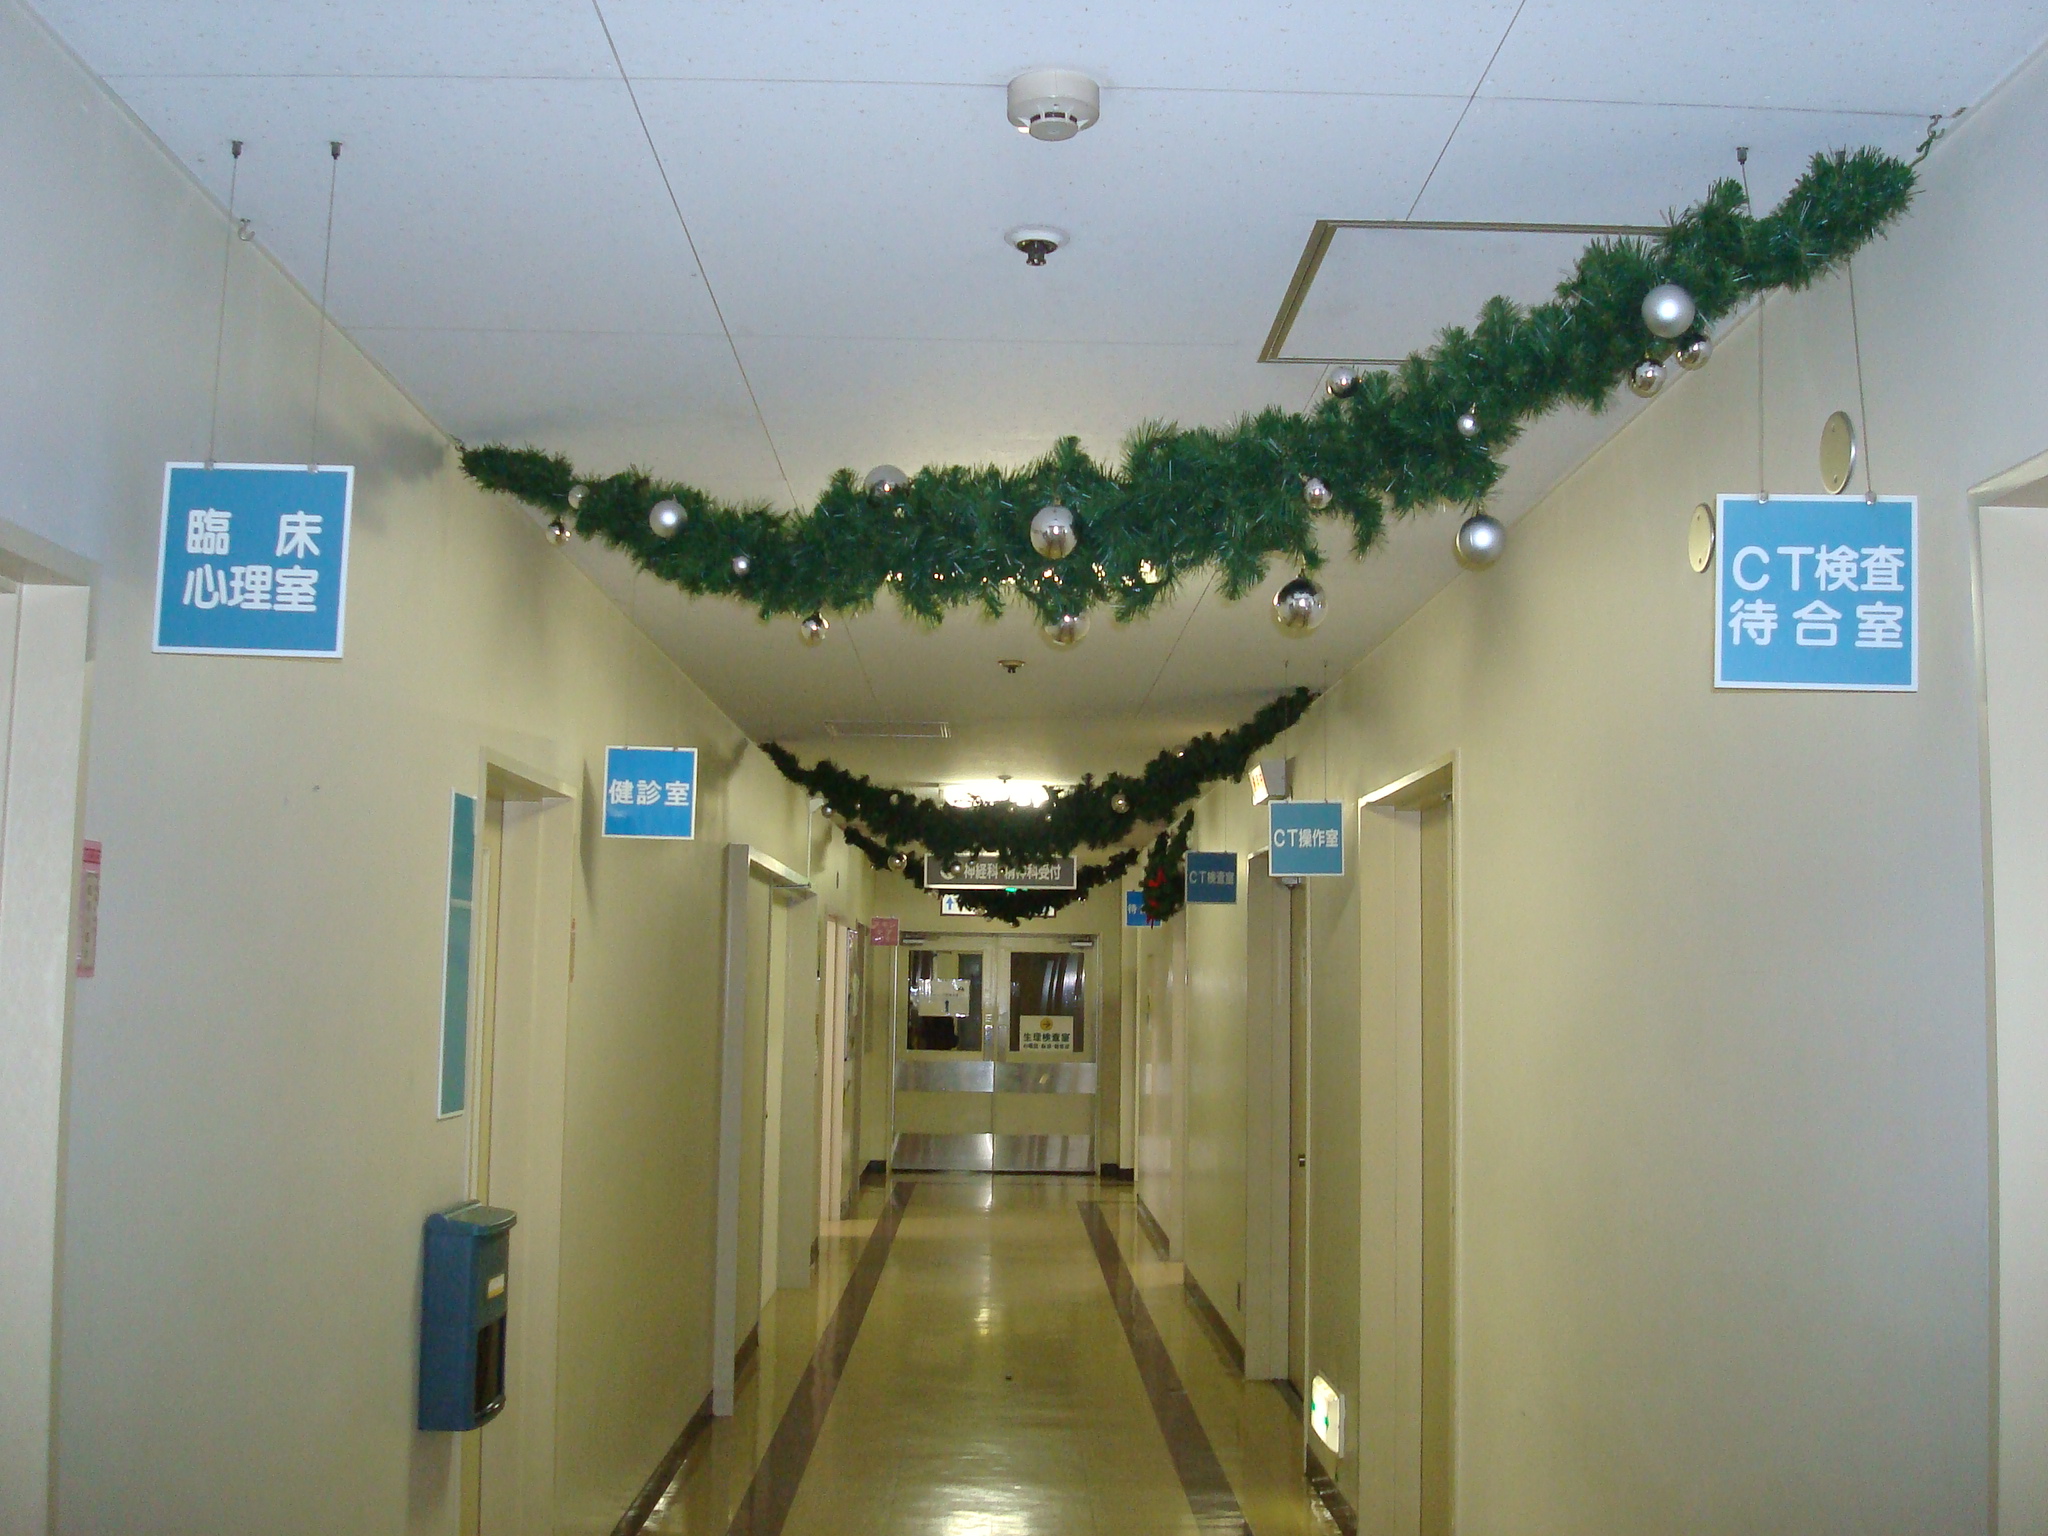 クリスマスの装いになりました てんちゃんブログ 天使病院 札幌市東区の総合病院